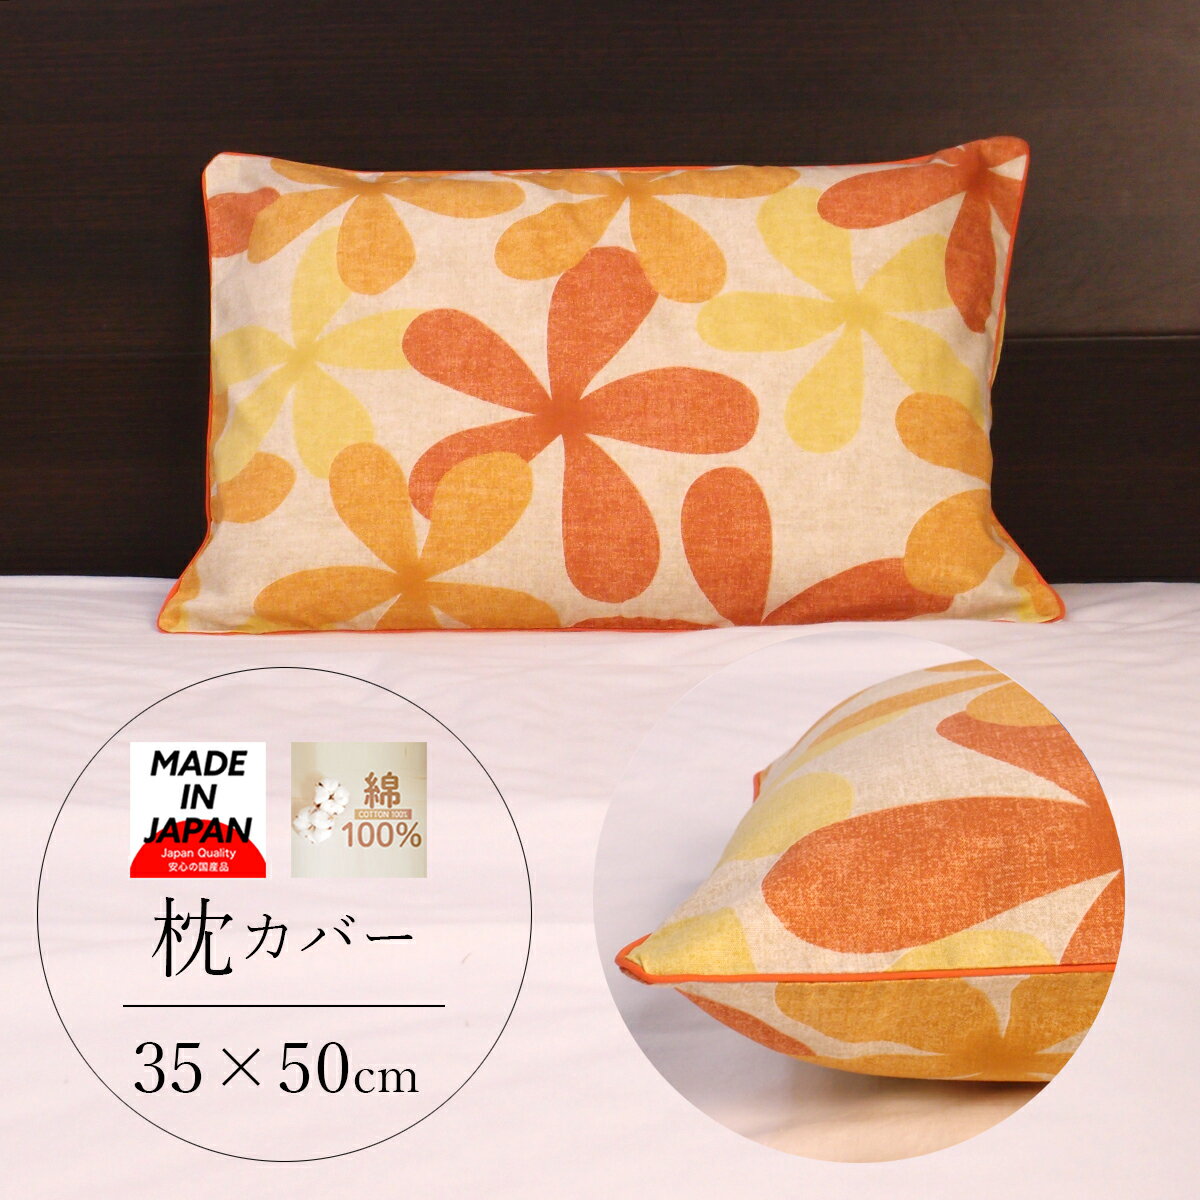 枕カバー 35×50 綿100% 381-9907 日本製 オレンジ まくらカバー ピロケース ピローケースネコポスにも対応いたします